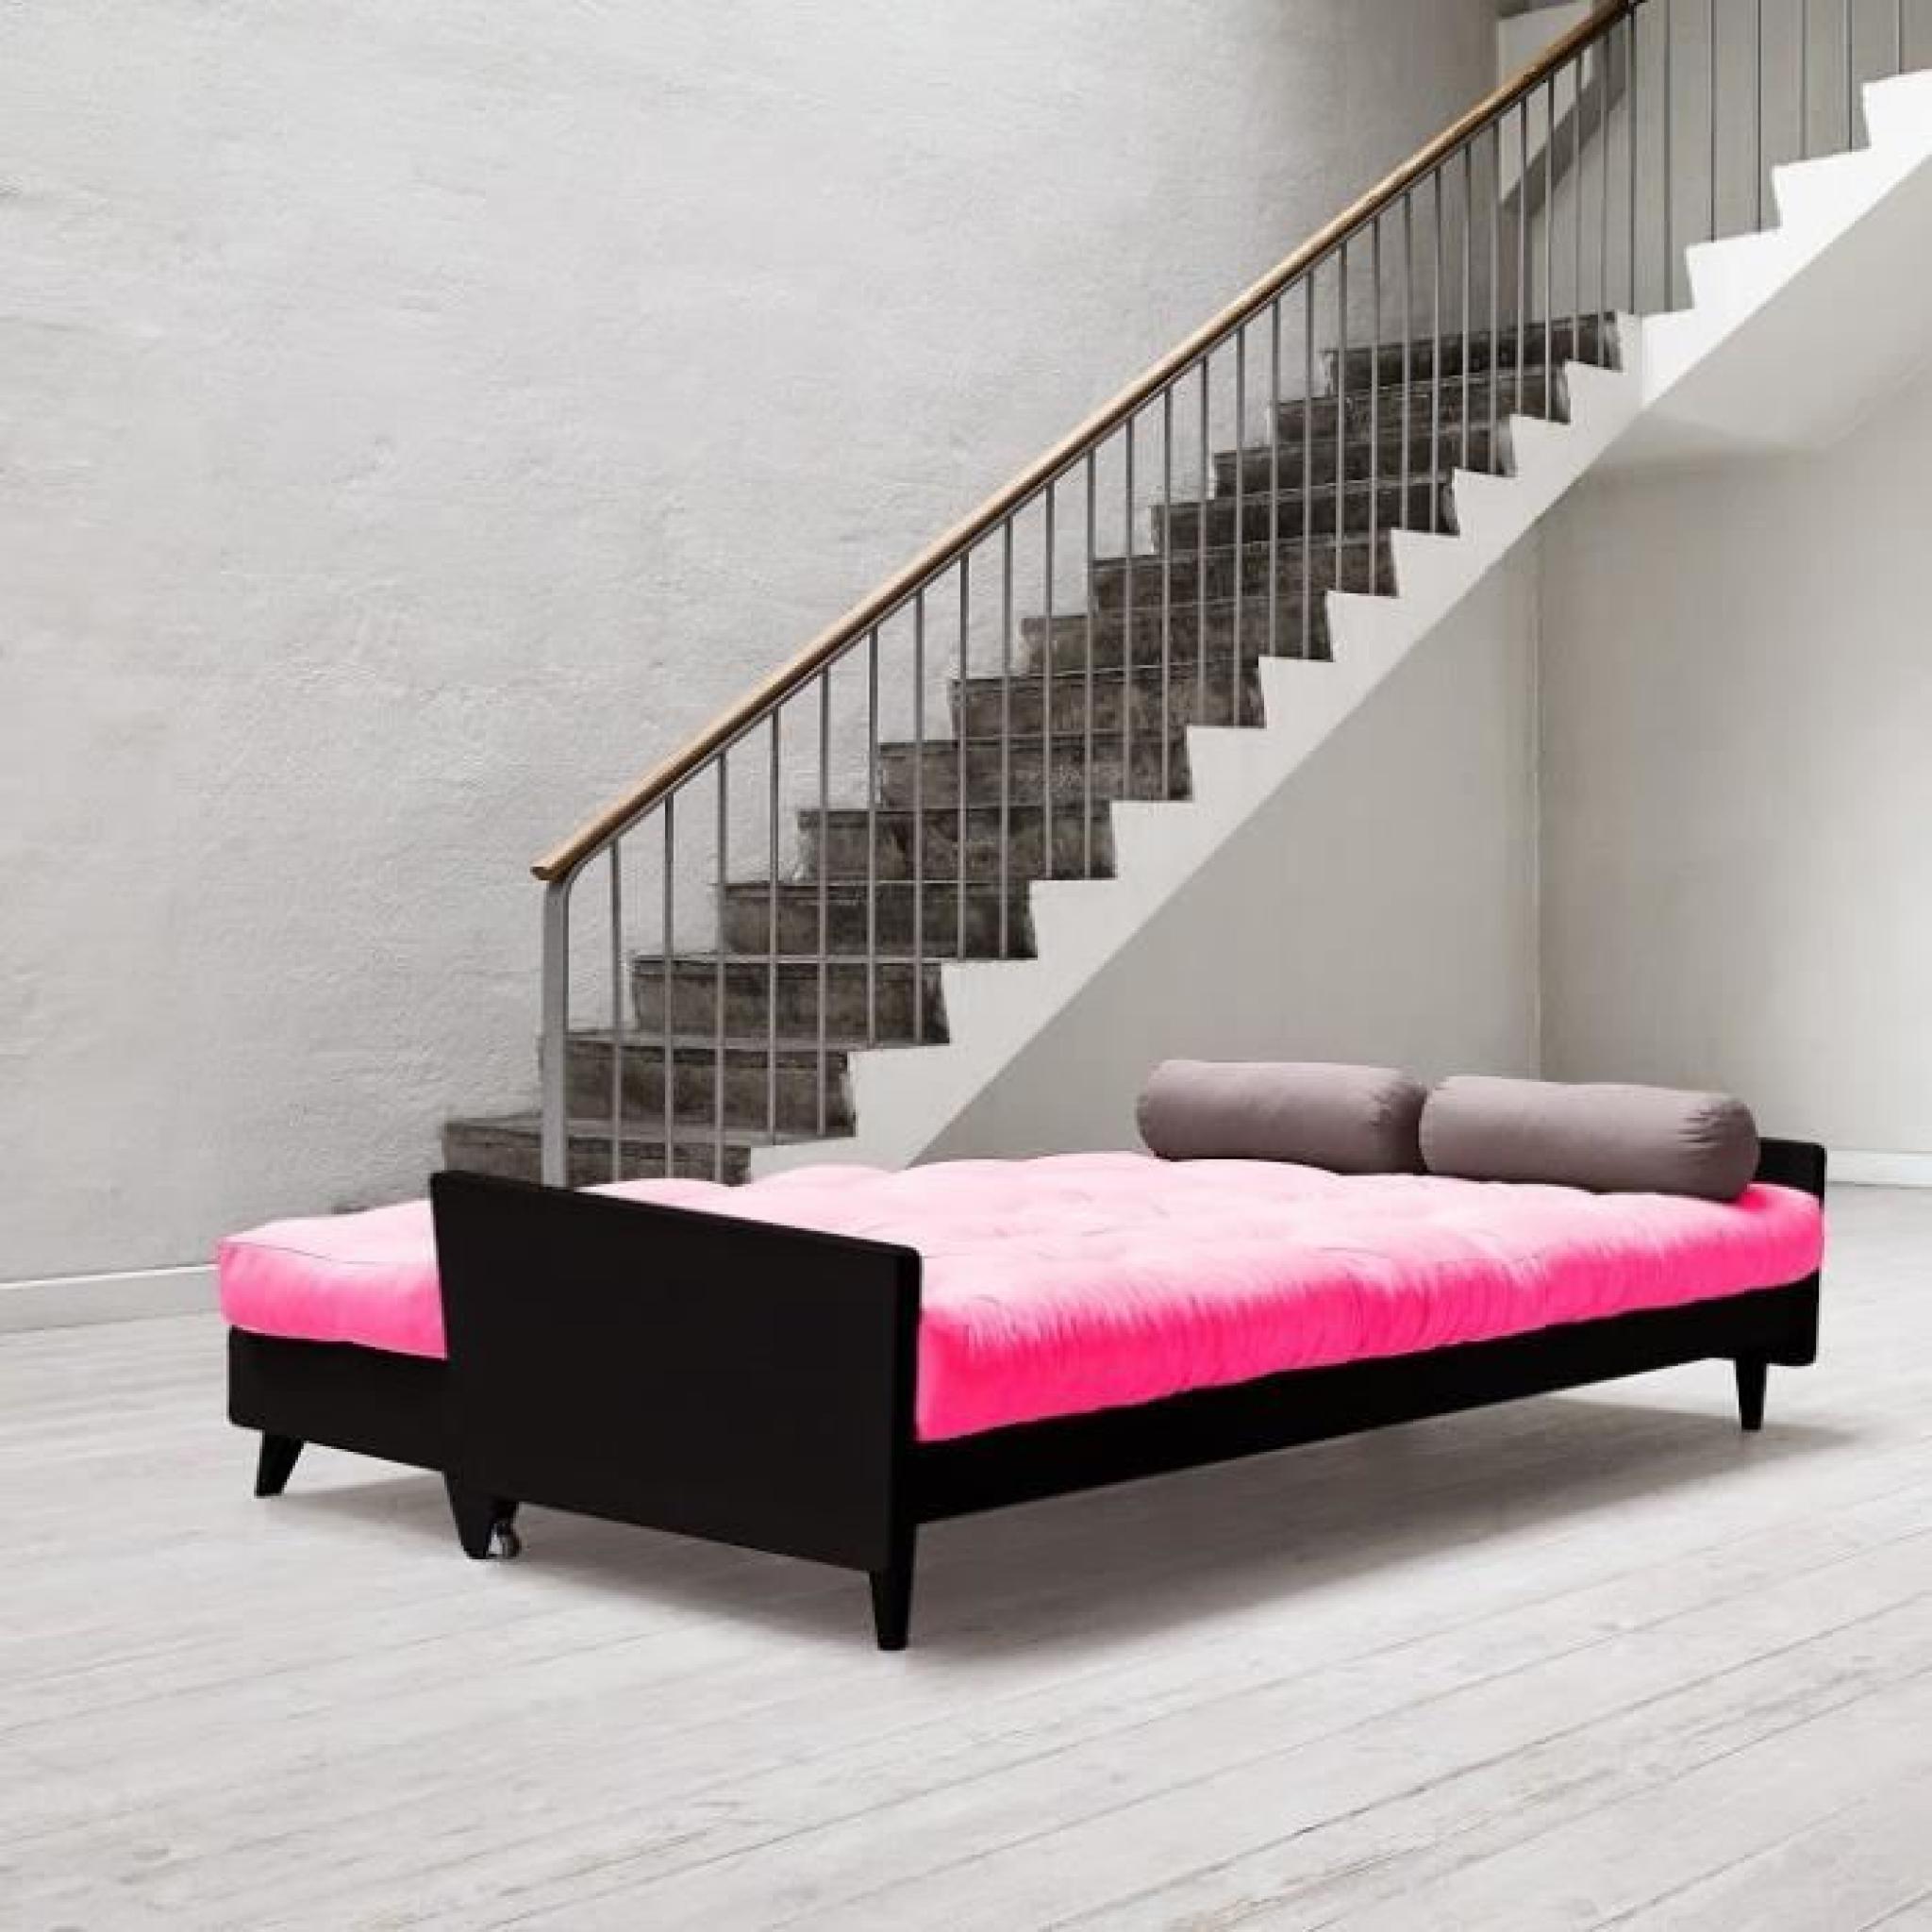 Canapé noir 3/4 places convertible INDIE futon rose magenta couchage 130*190cm pas cher